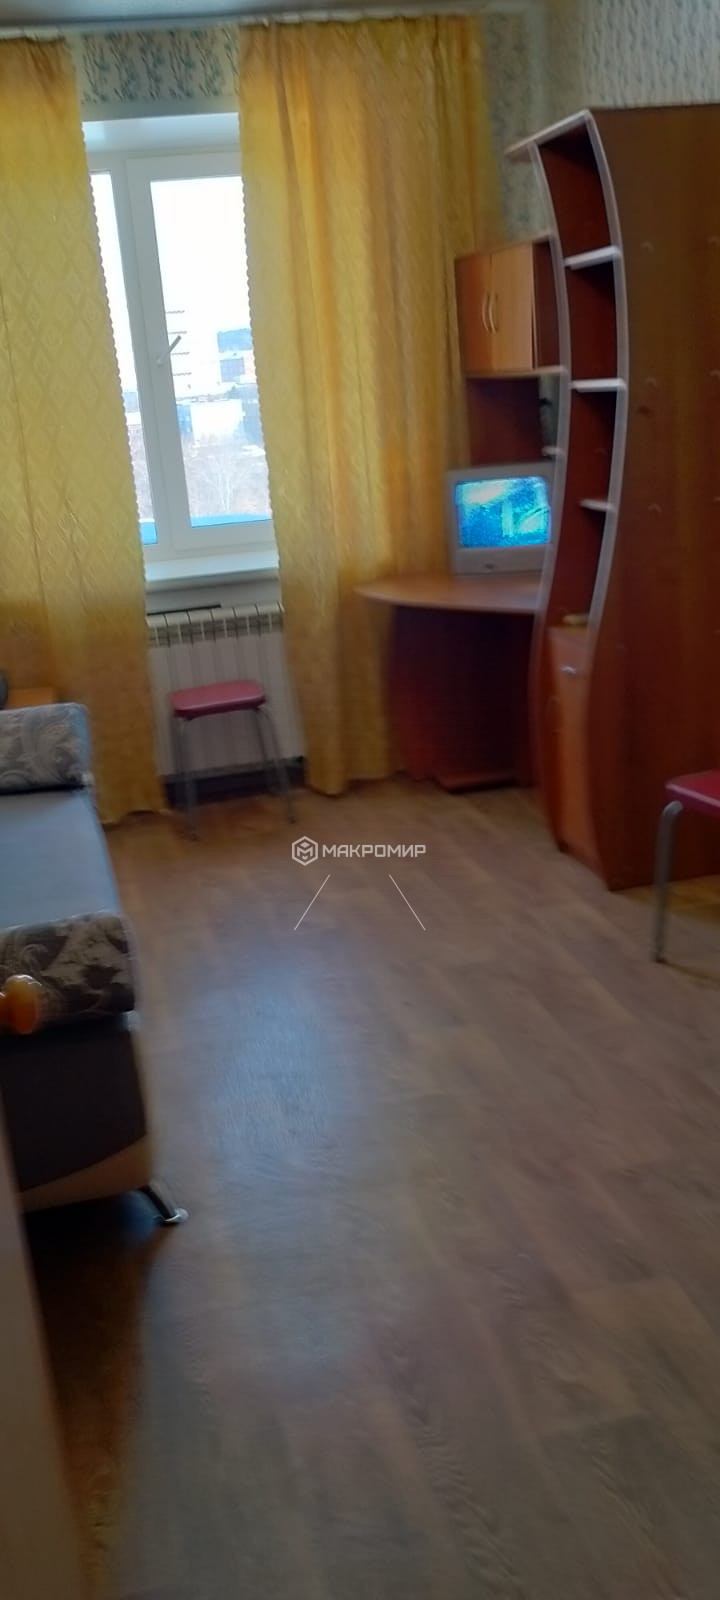 Новочеркасская, 2, комната